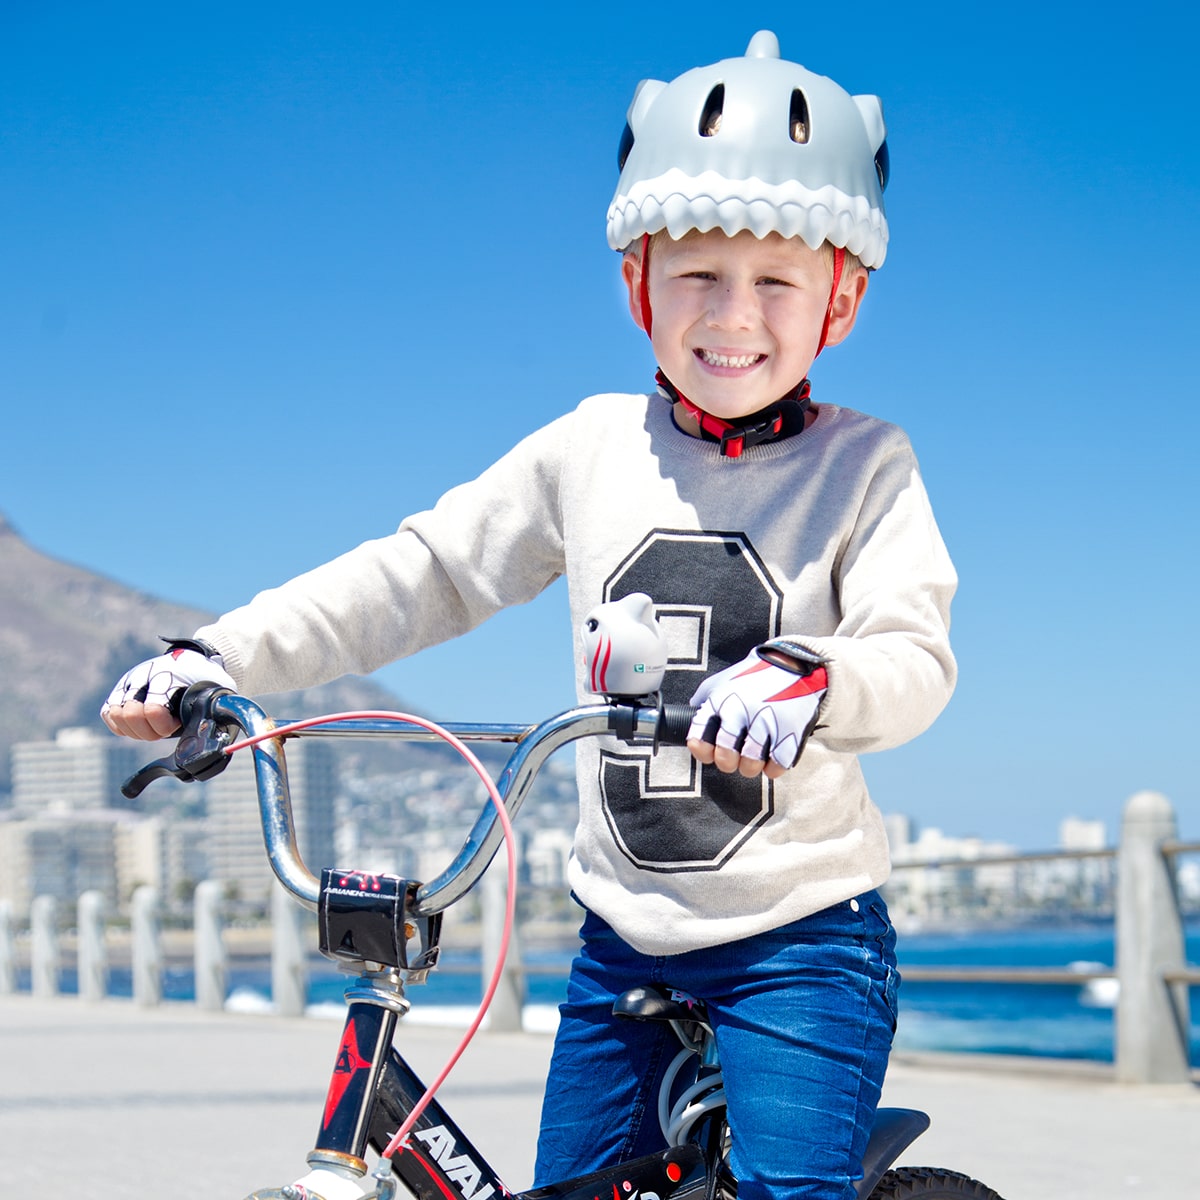 Capacete Bicicleta Para Crianças|tubarão Cinza| Crazy Safety  En1078 Certificado